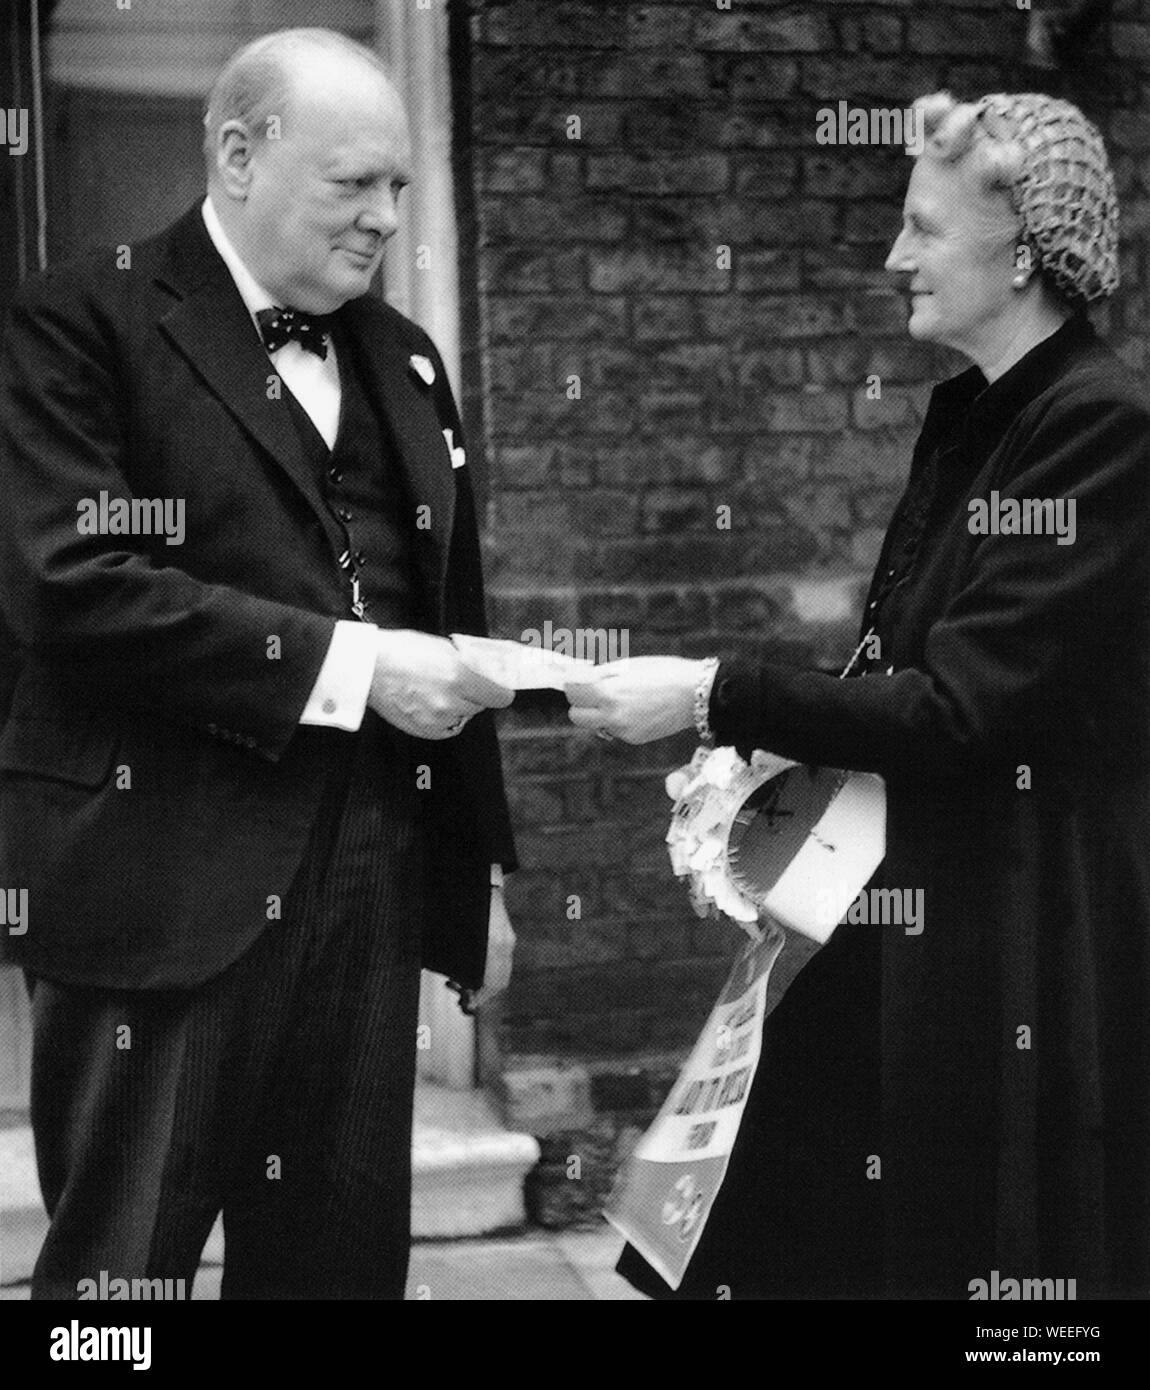 Winston Churchill fait don d'argent à l'appel de Mme Churchill de la Croix-Rouge à la Russie. Décembre 1941 Banque D'Images